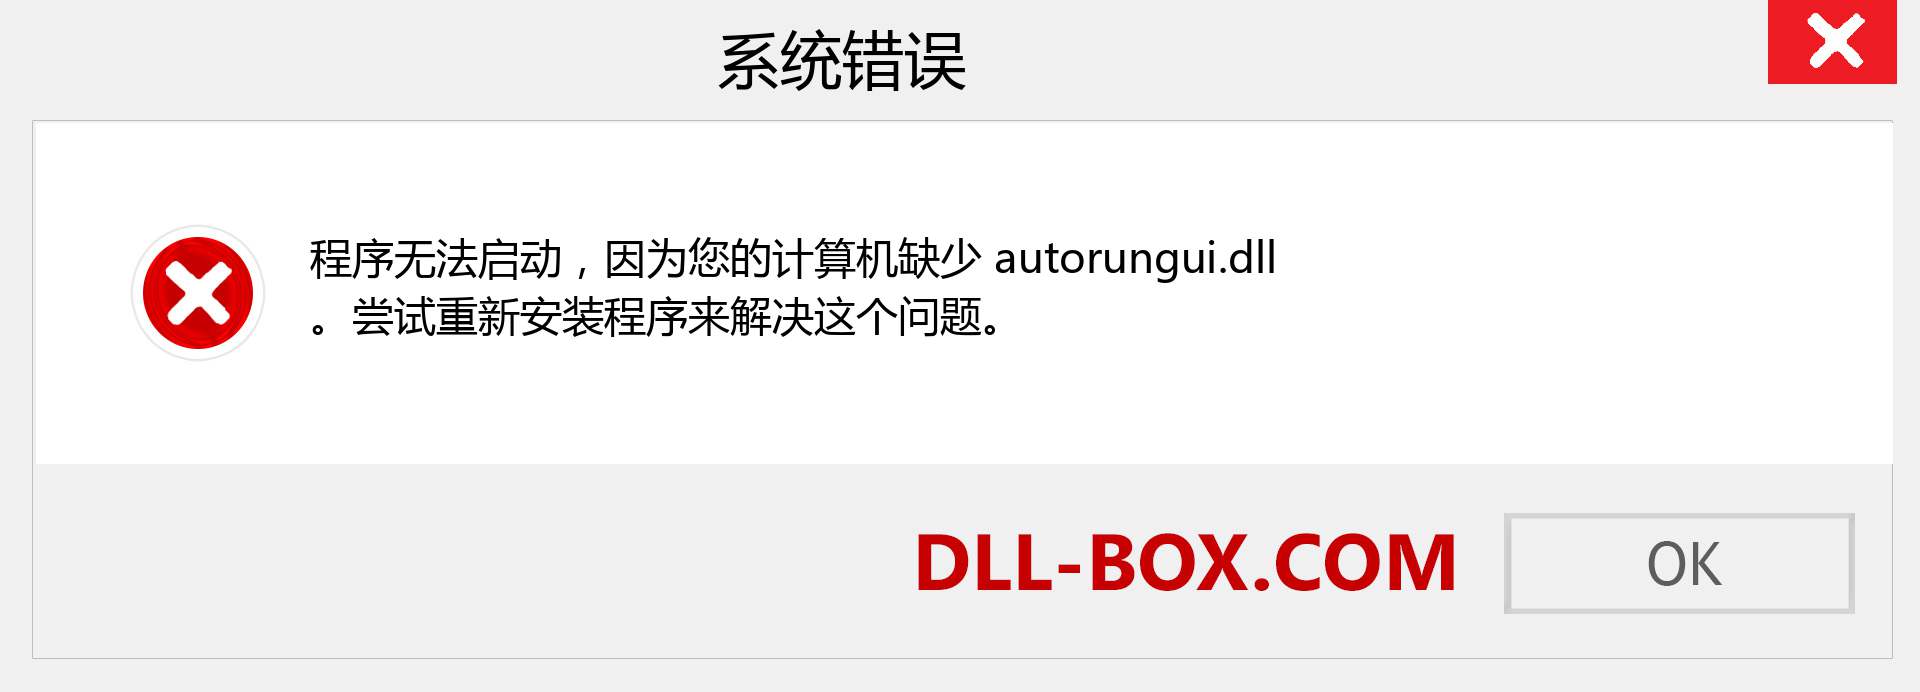 autorungui.dll 文件丢失？。 适用于 Windows 7、8、10 的下载 - 修复 Windows、照片、图像上的 autorungui dll 丢失错误